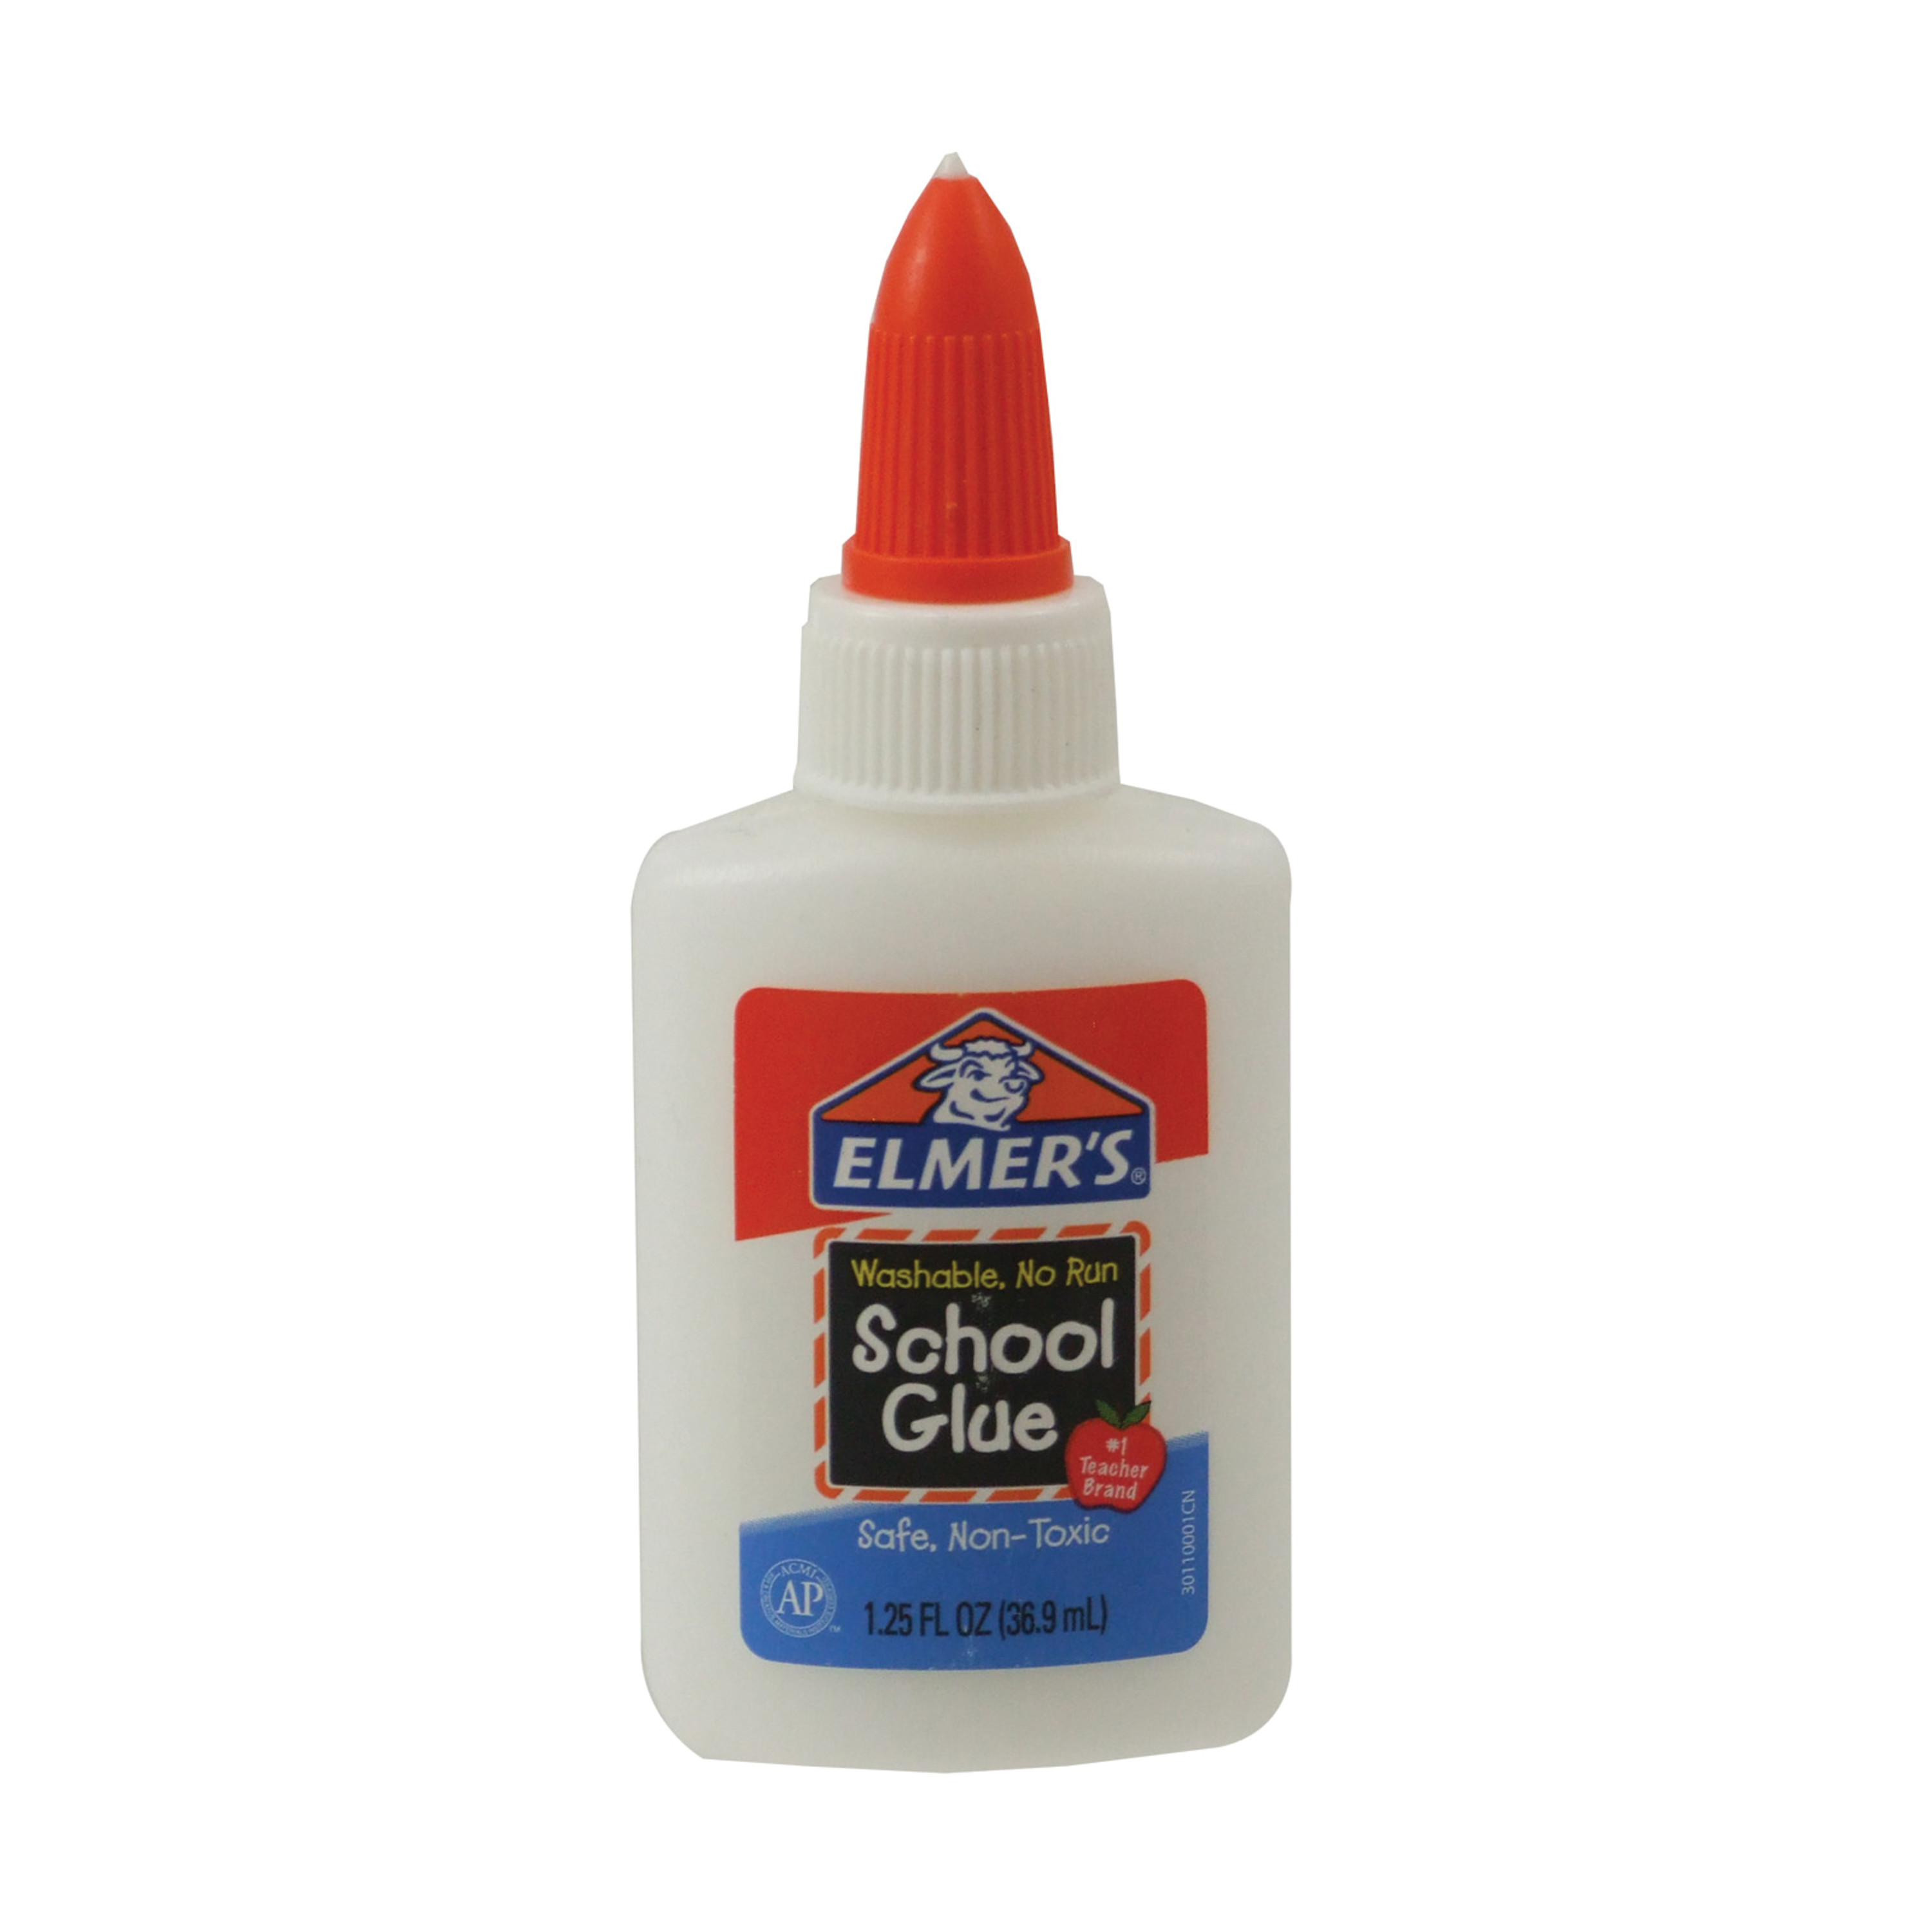 Elmer's School Glue, 1.25 oz.